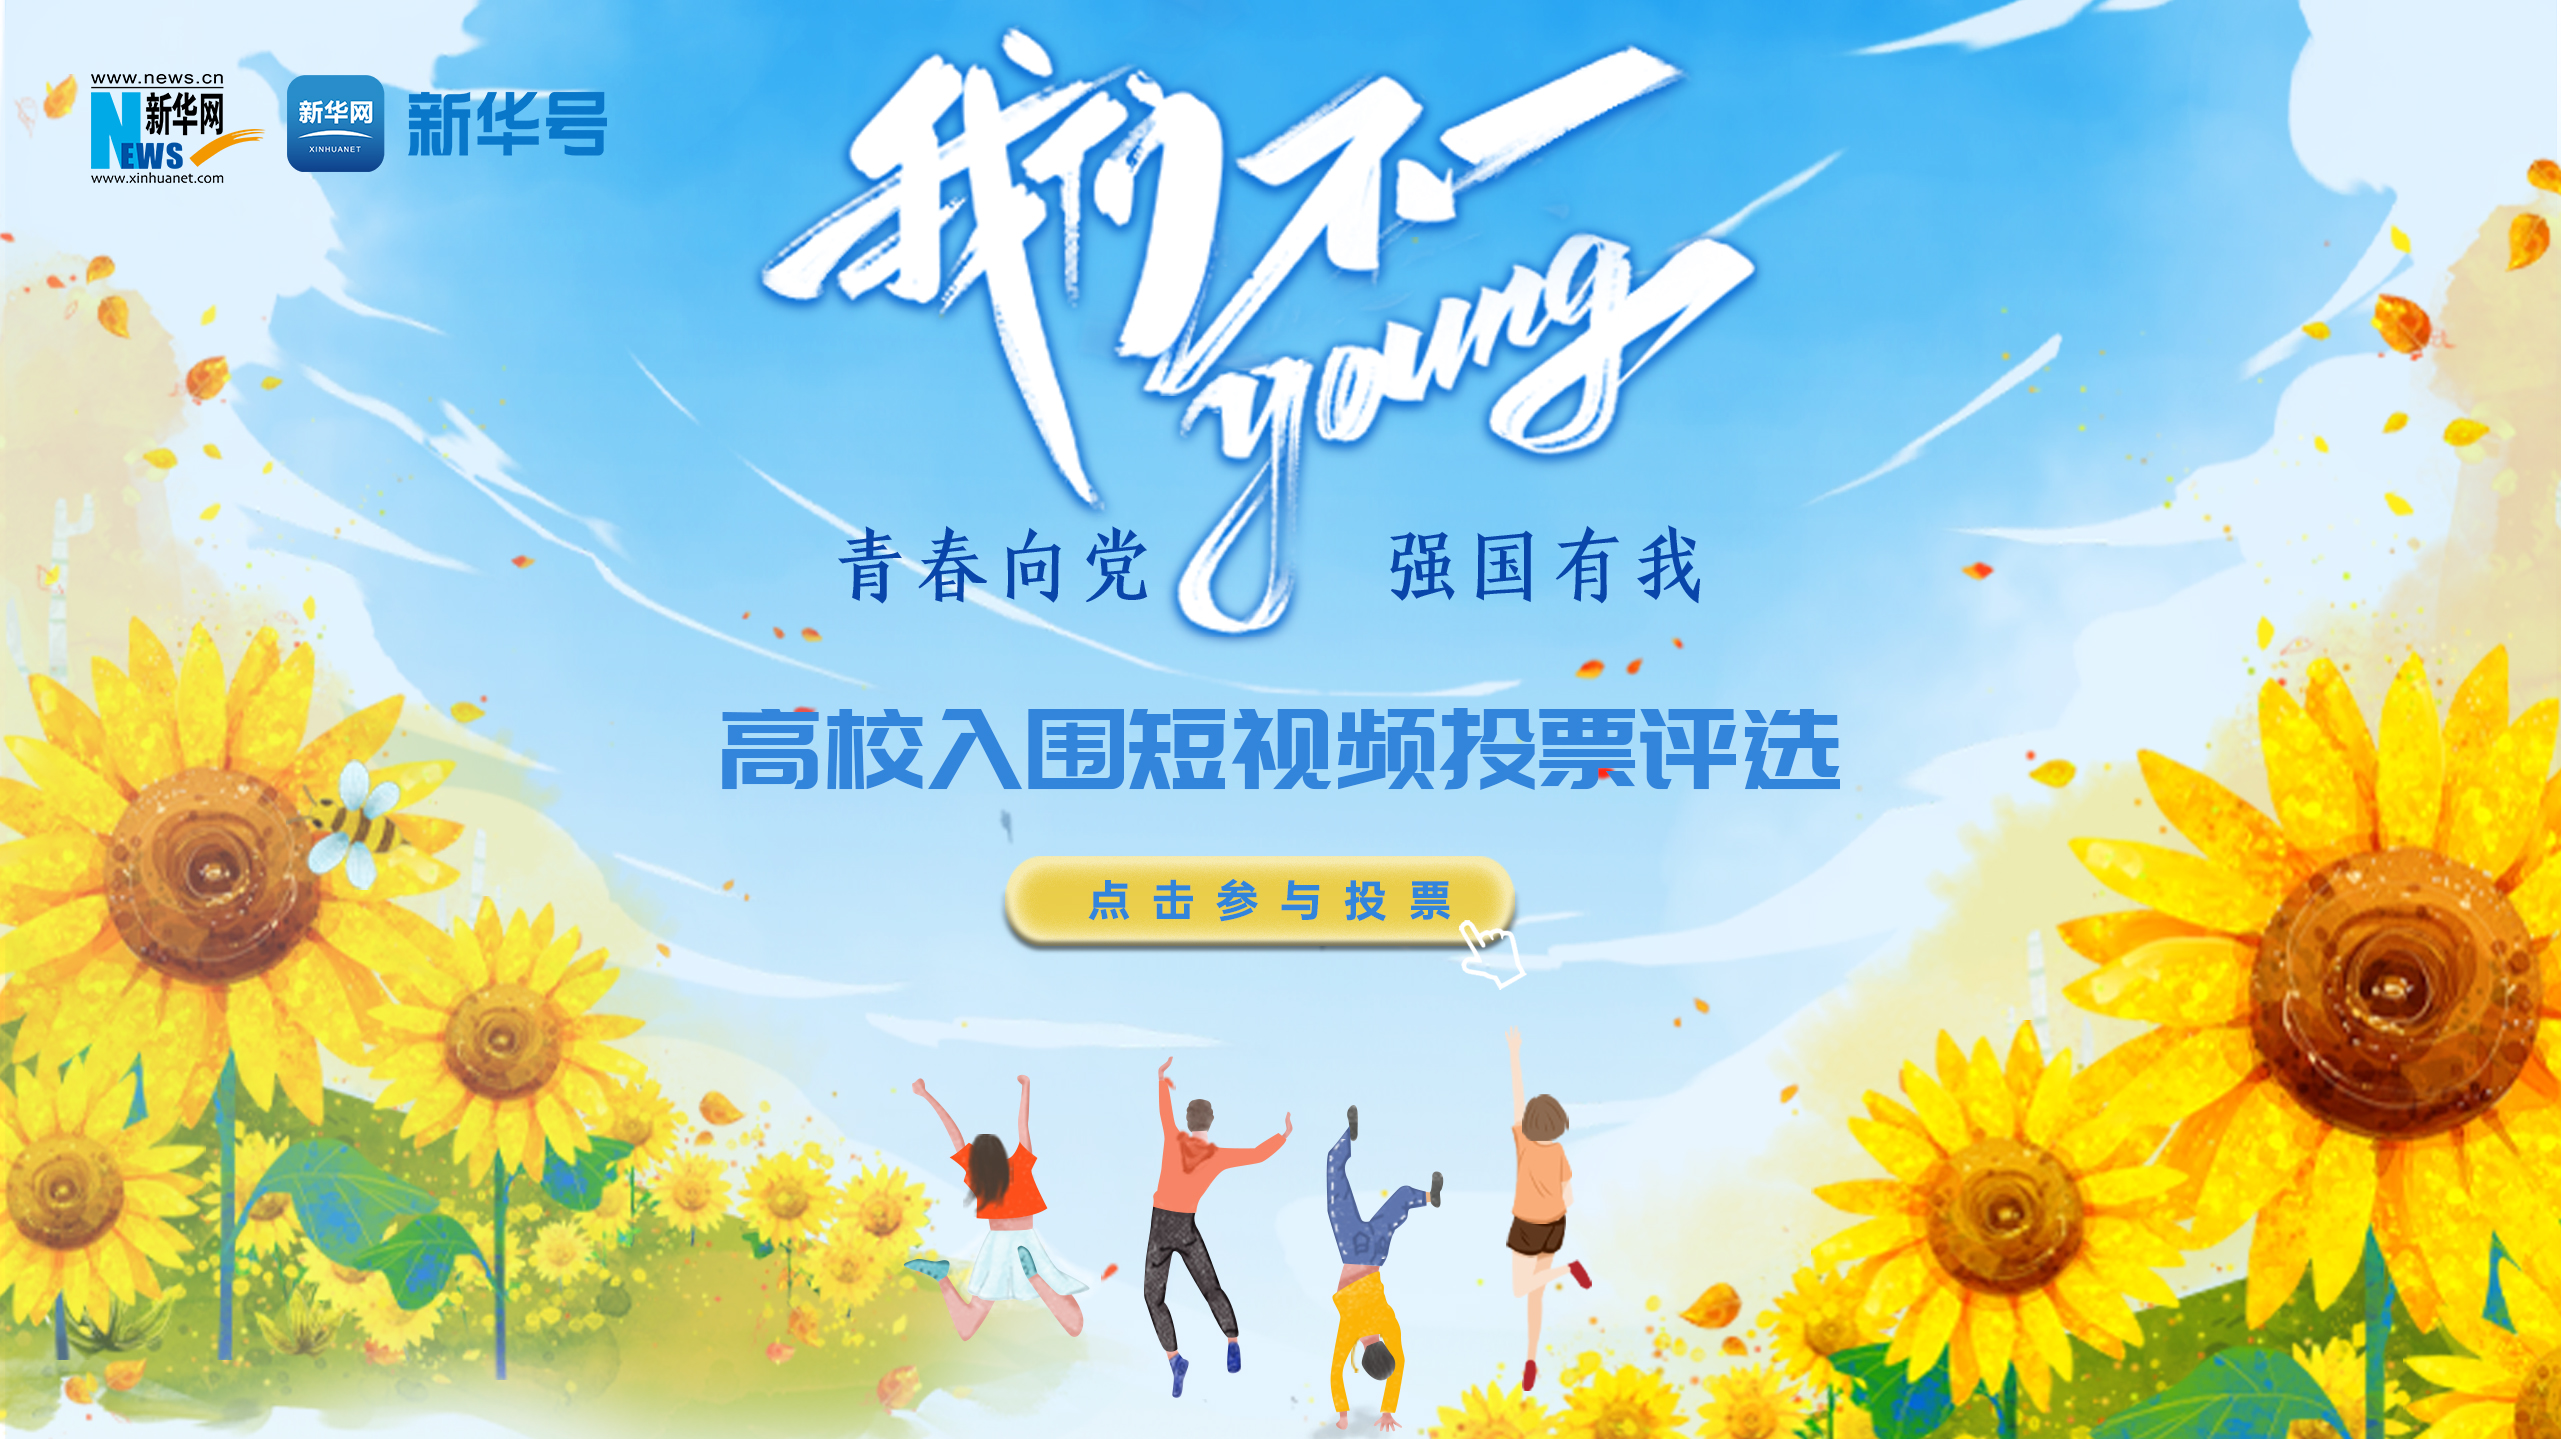 投(tou)票“我們不一young” 高校(xiao)短視頻活動火熱進行(xing)中(zhong)！